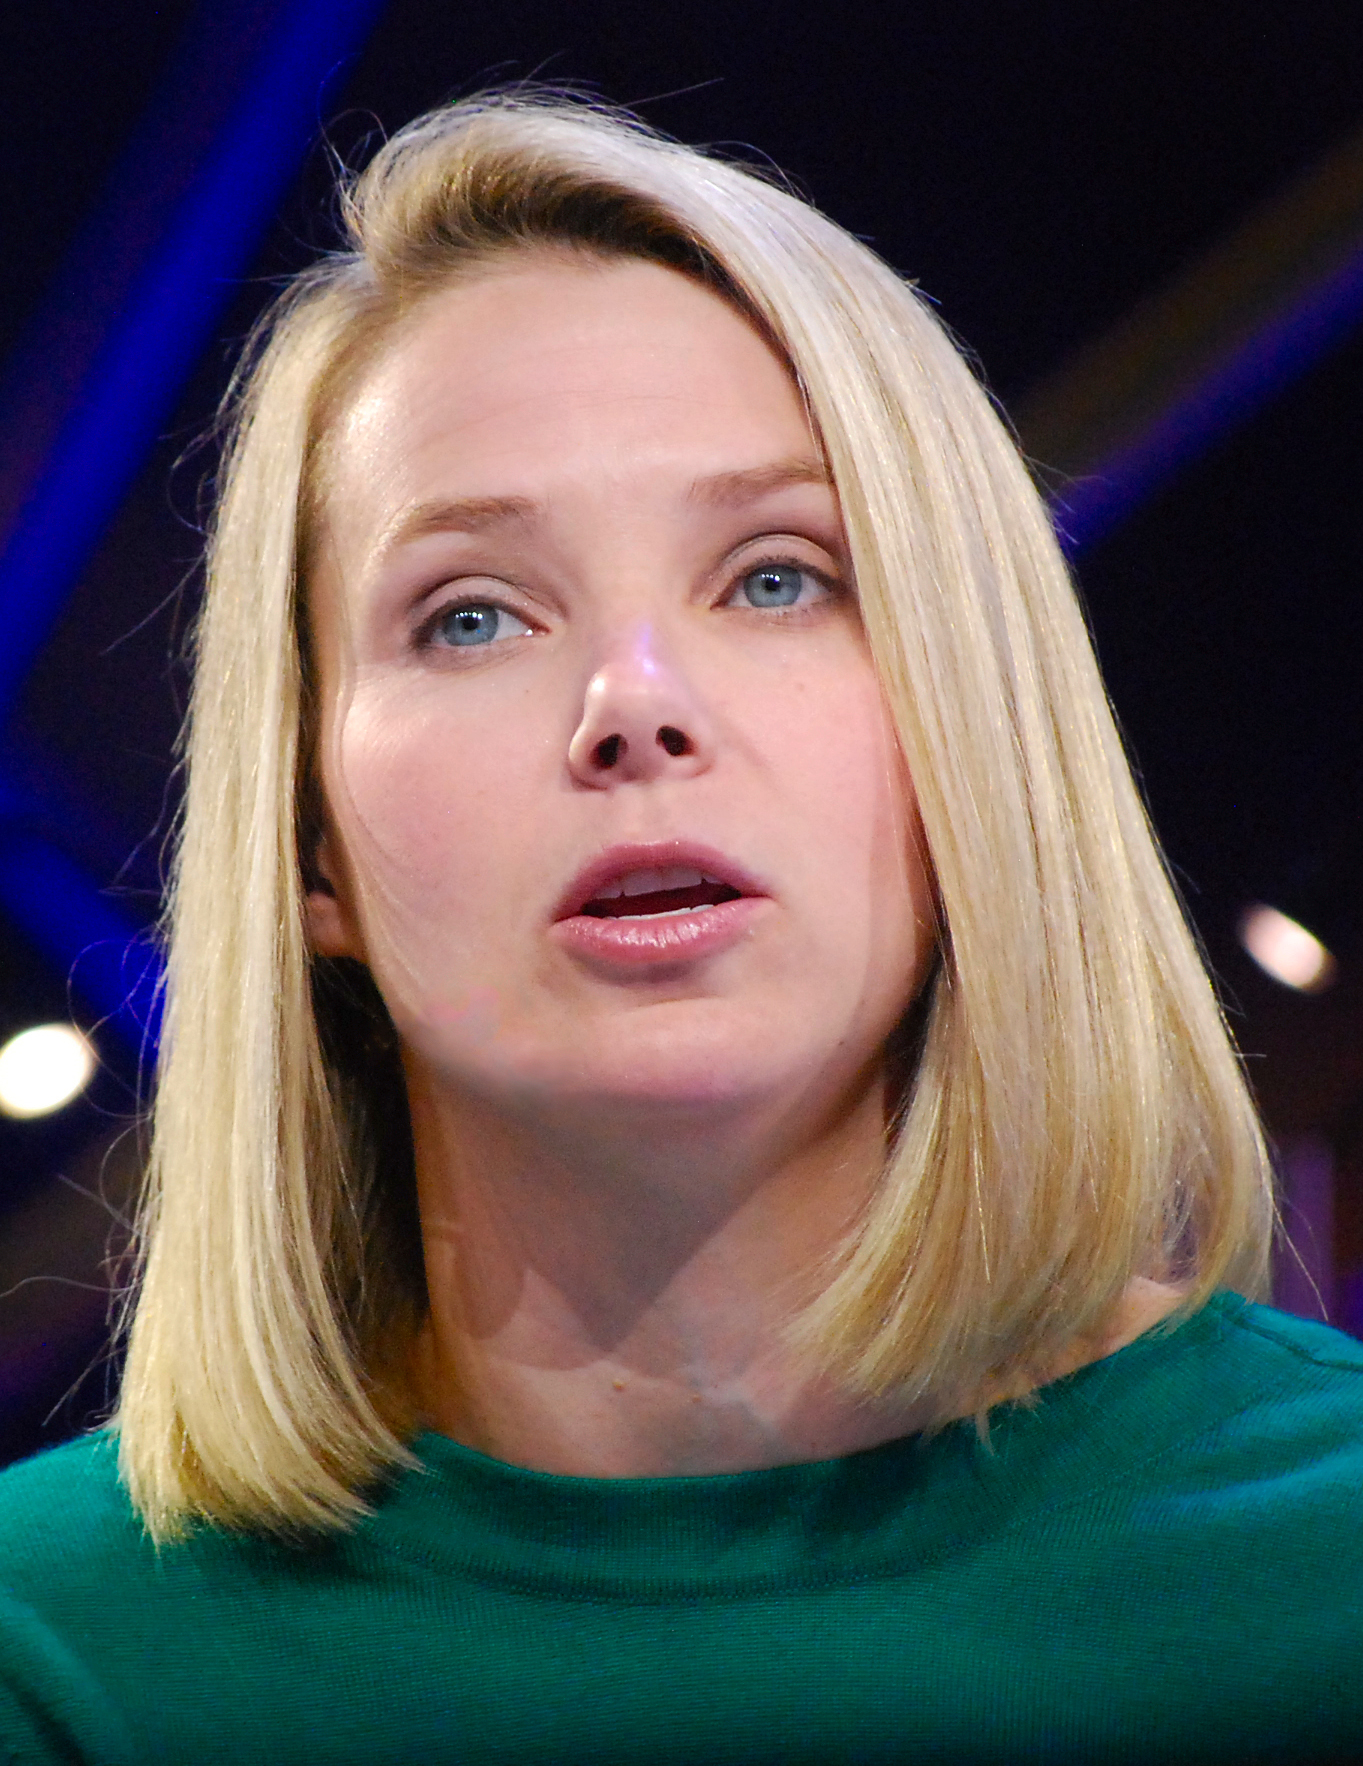 Marissa Mayer - Former CEO of Yahoo!